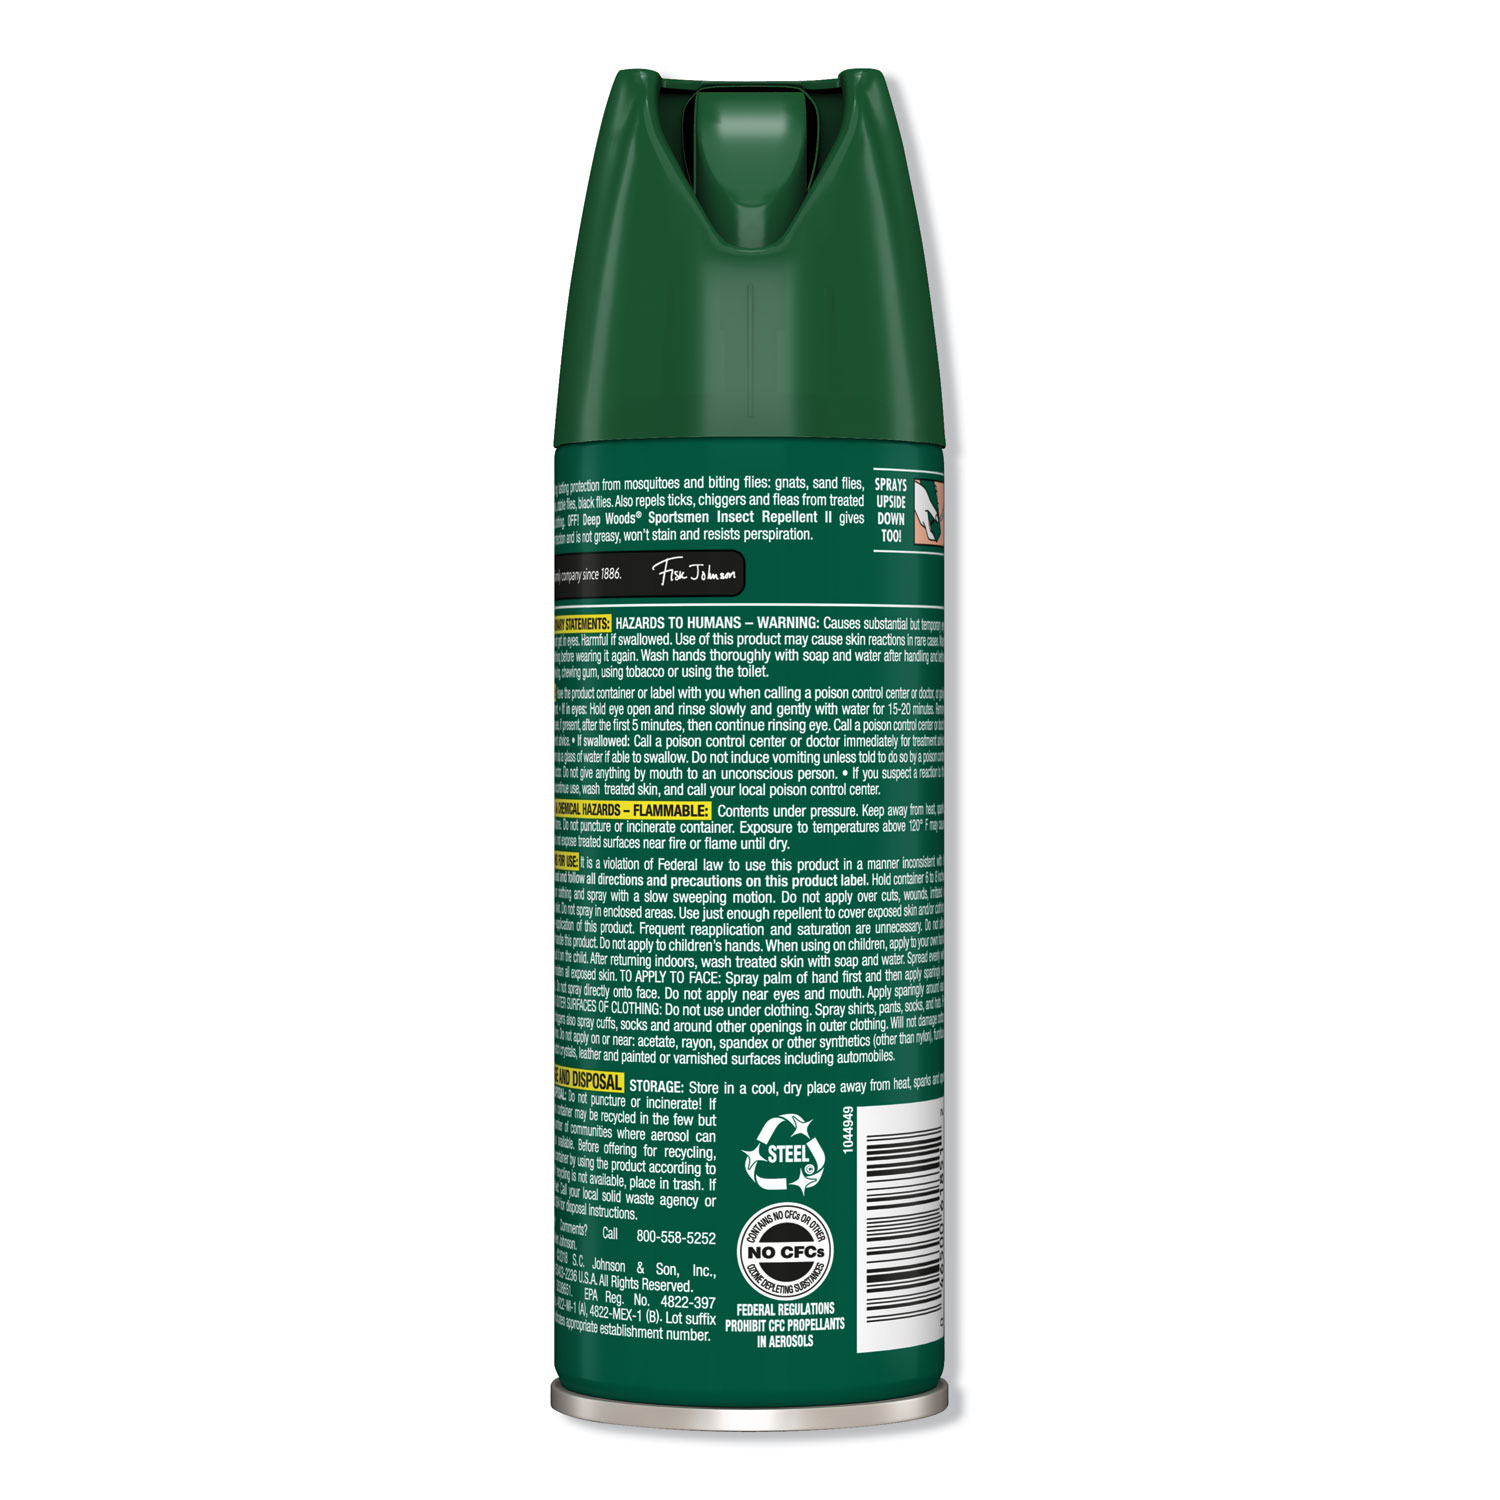 Deep Woods Sportsmen Insect Repellent, 6 oz Aerosol, 12/Carton